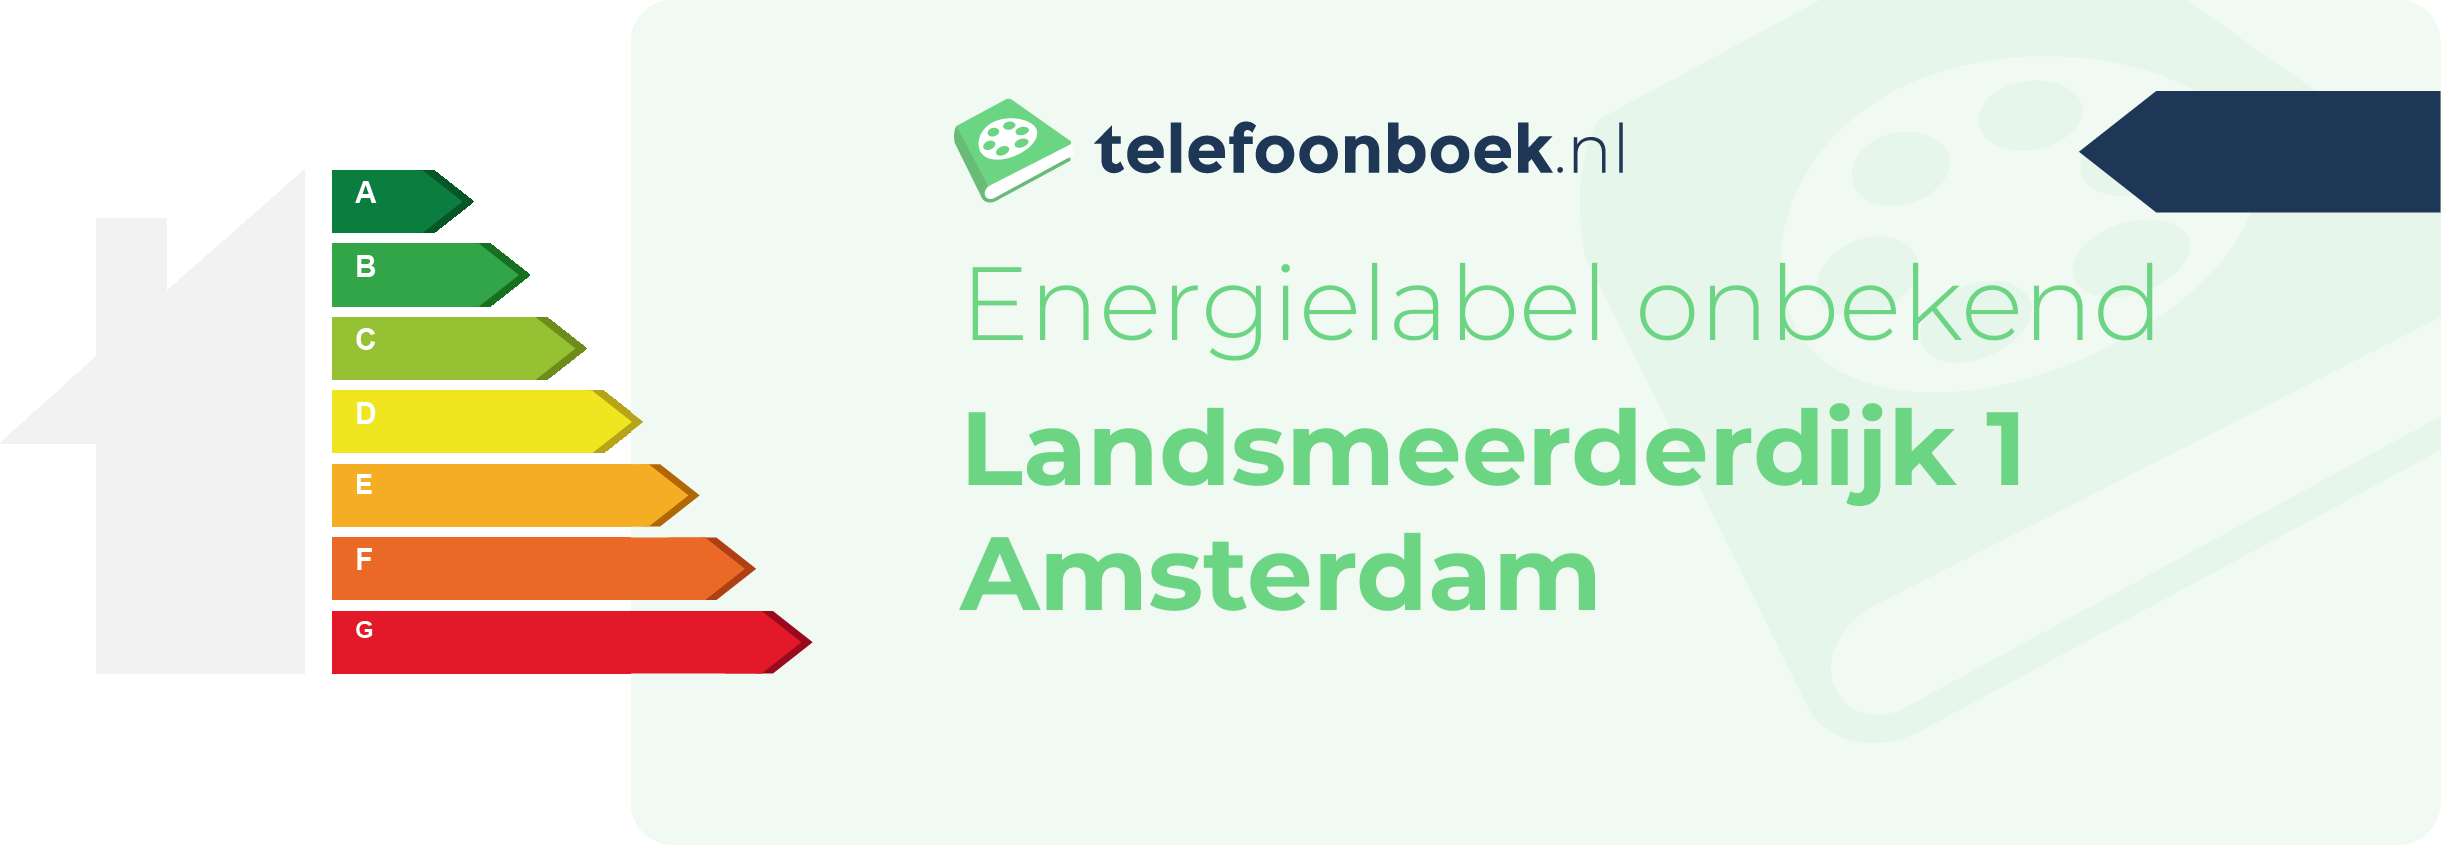 Energielabel Landsmeerderdijk 1 Amsterdam